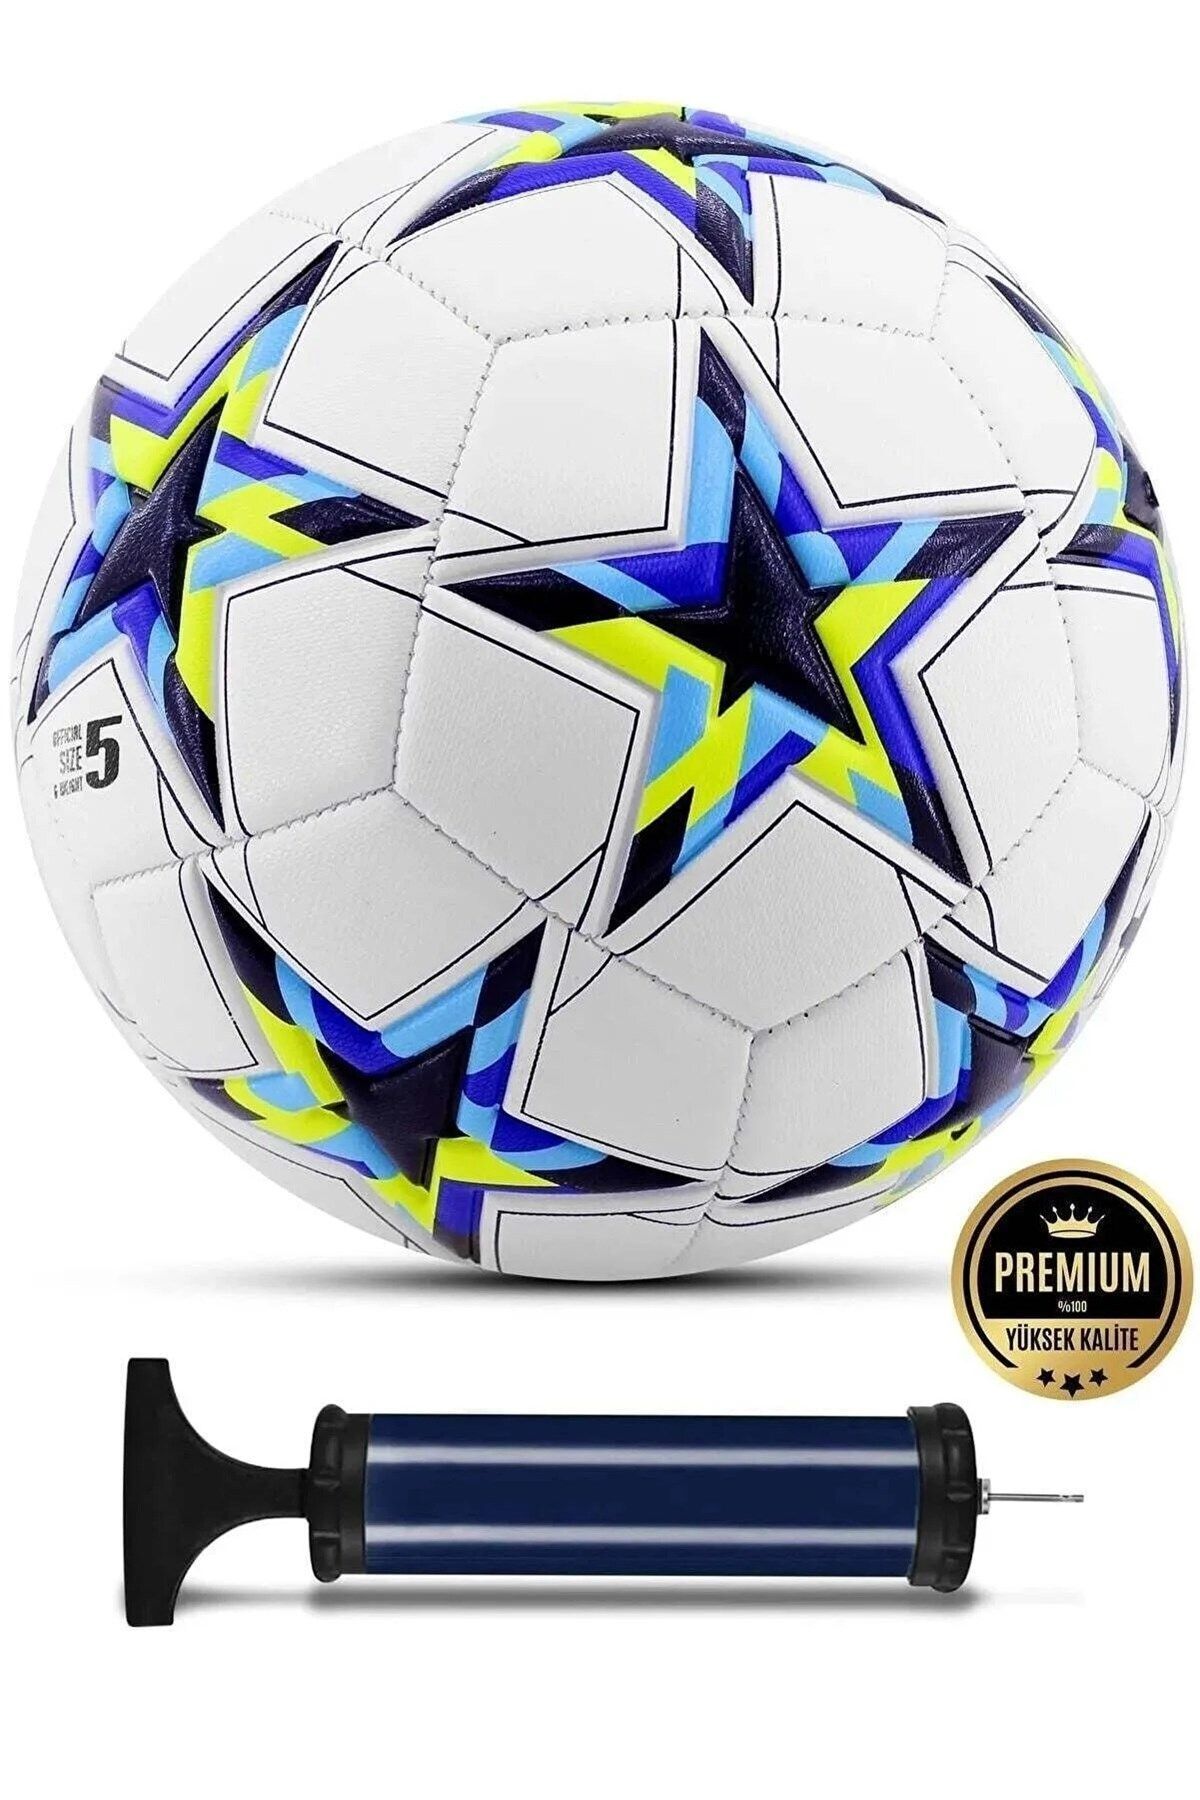 xeox Futbol Topu Pompa Hediyeli Sert Zemin Ve Halı Saha Topu